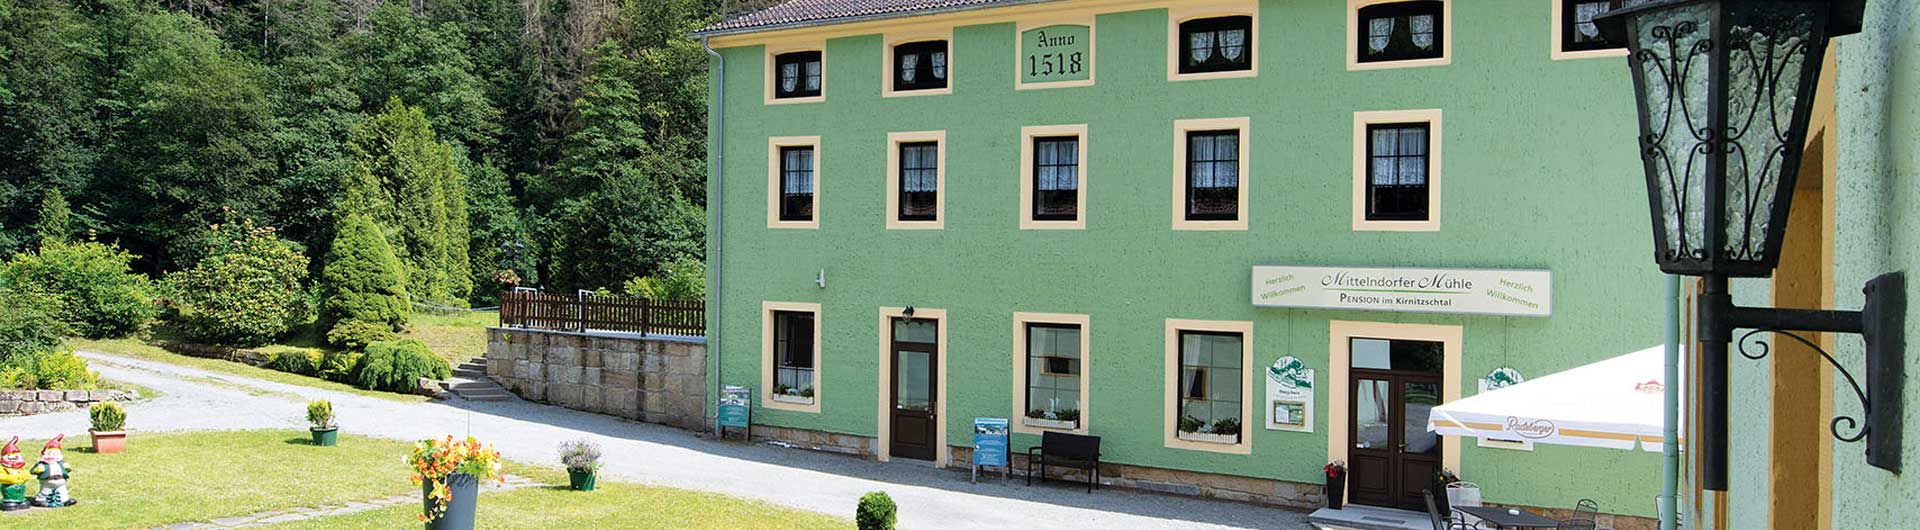 Pension Mittelndorfer Mühle - Haus am Kirnitzschbach